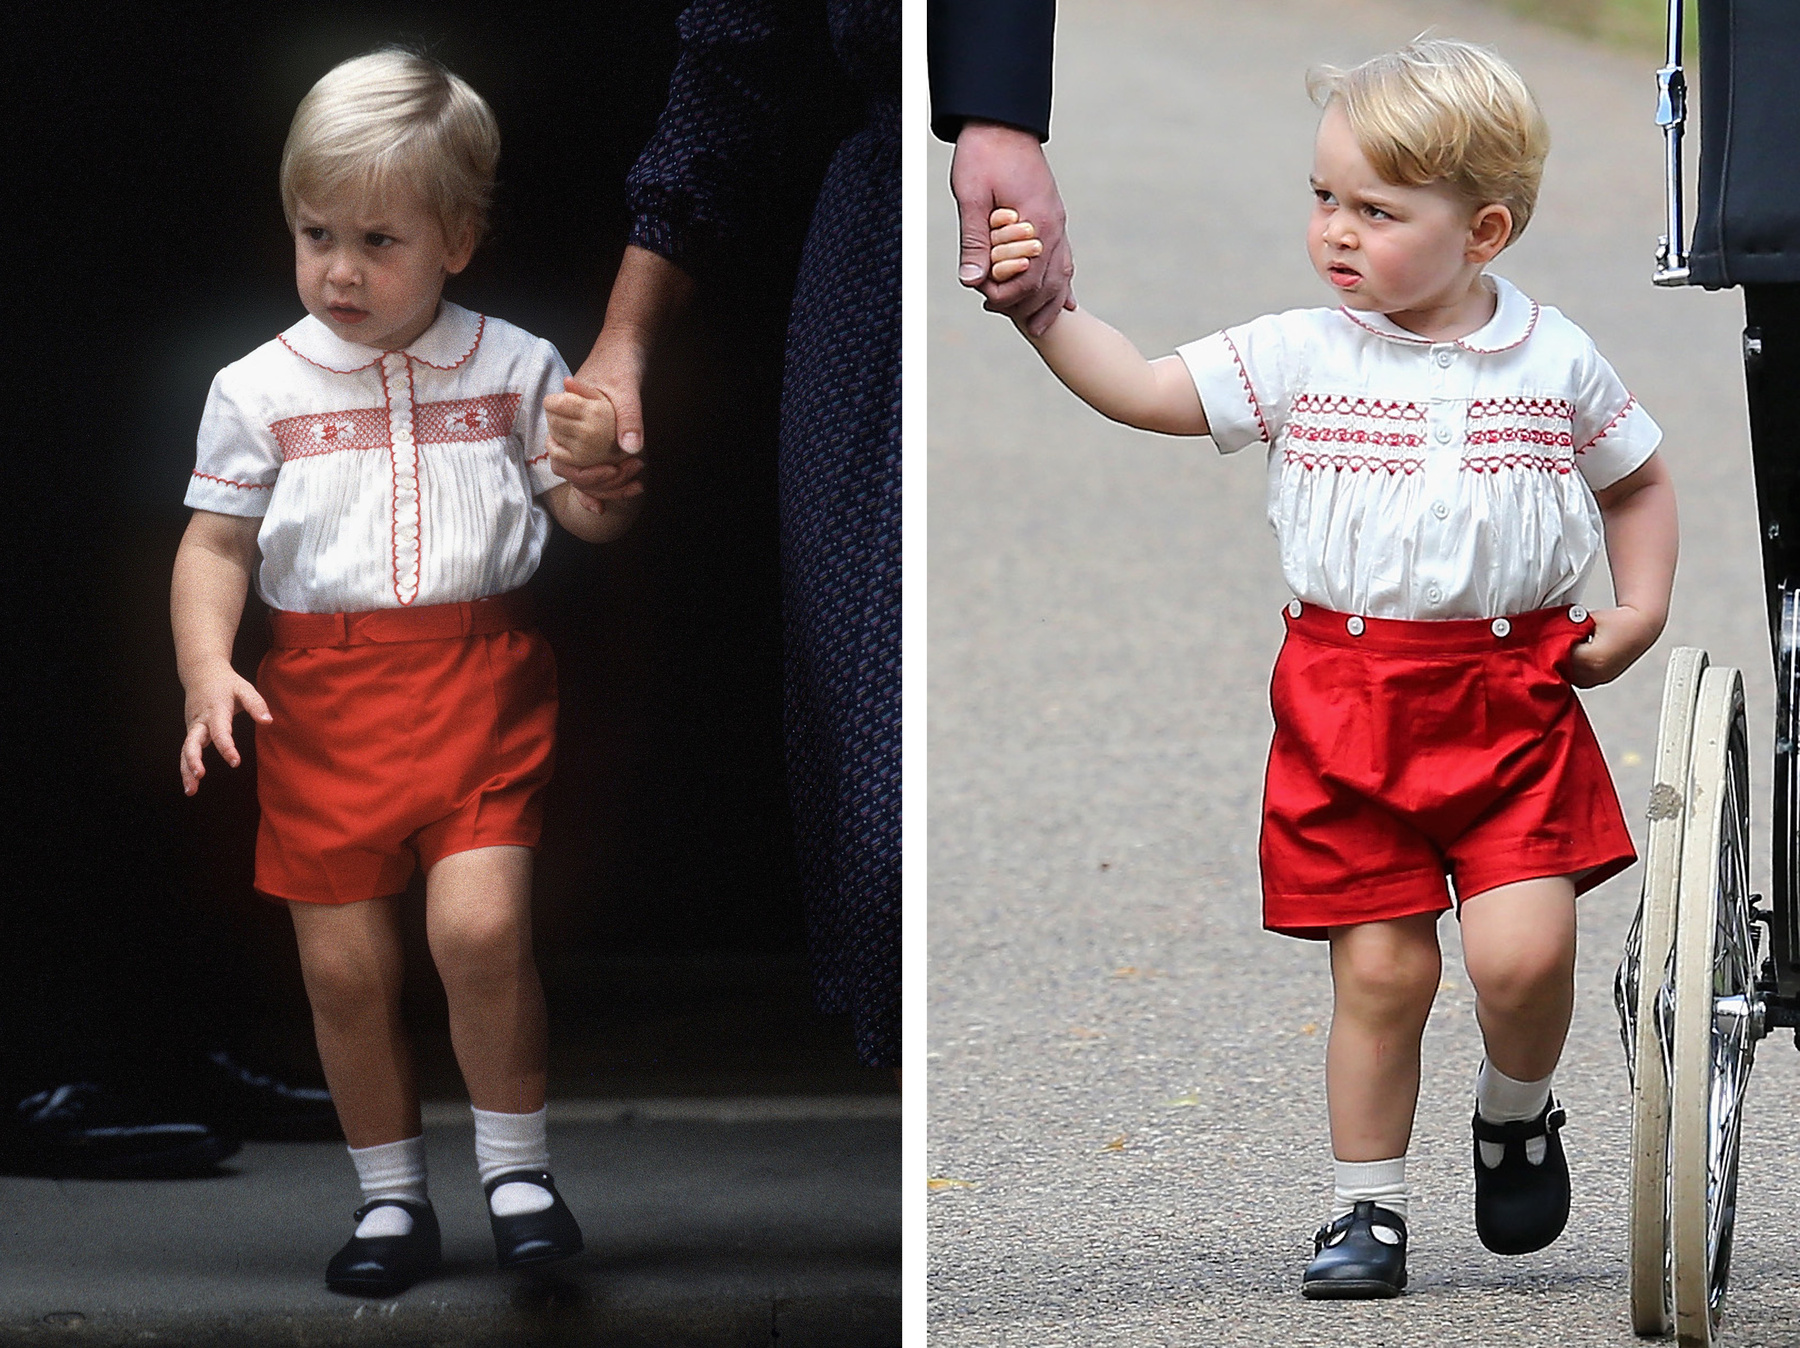 További érdekesség, hogy György herceget pont úgy öltöztették fel, mint Vilmos herceget Harry keresztelőjekor 1984-ben.